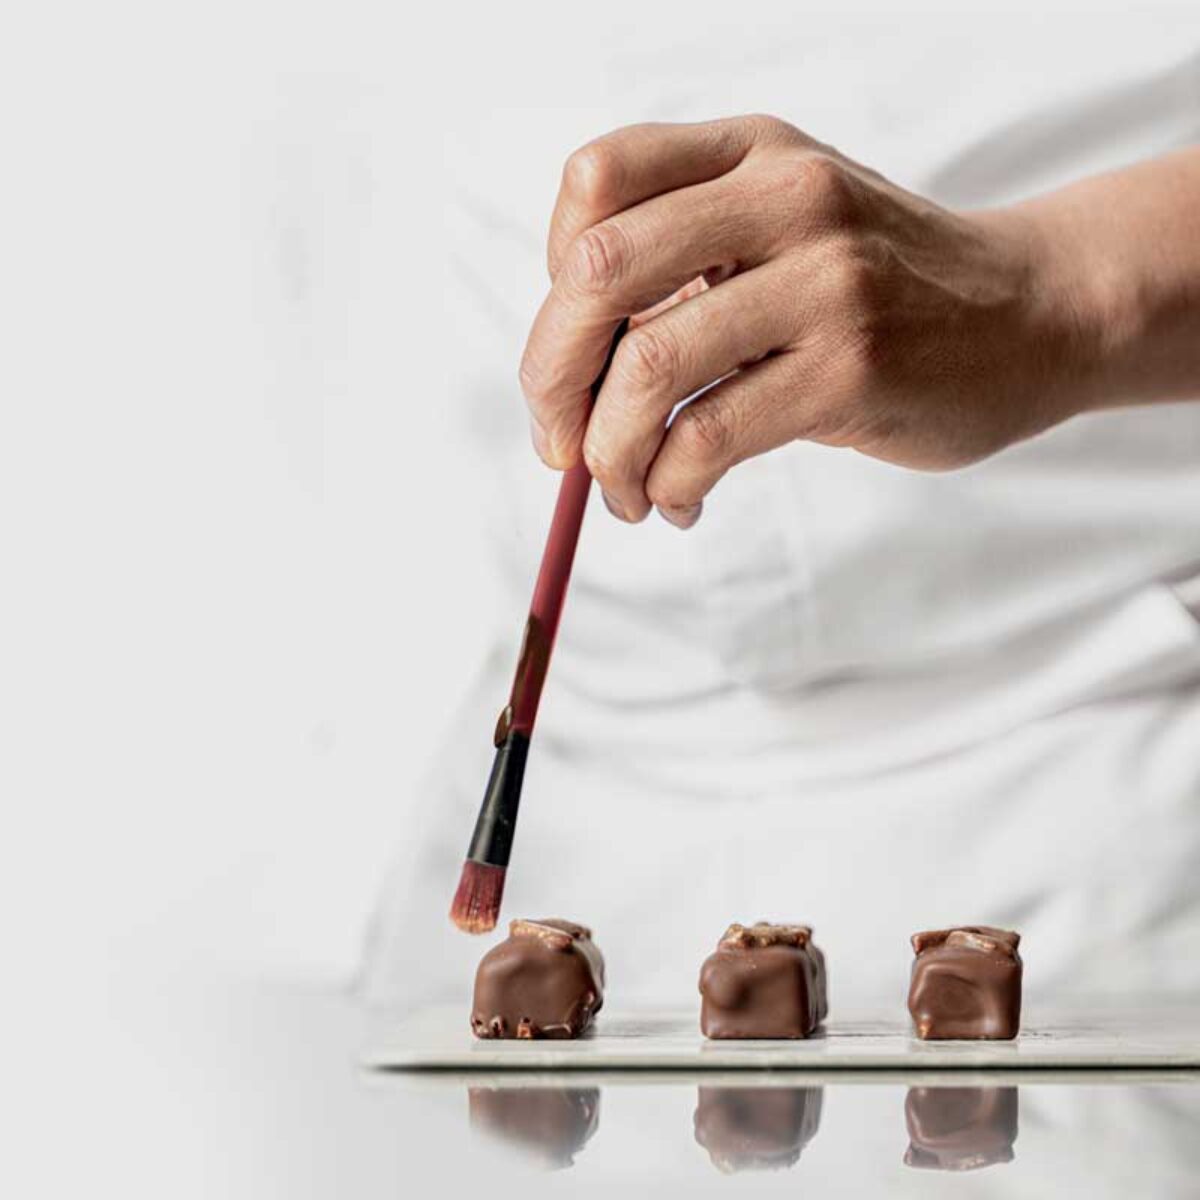 Tablette Suisse de Chocolat Noir Pâtissier 63 % - Villars